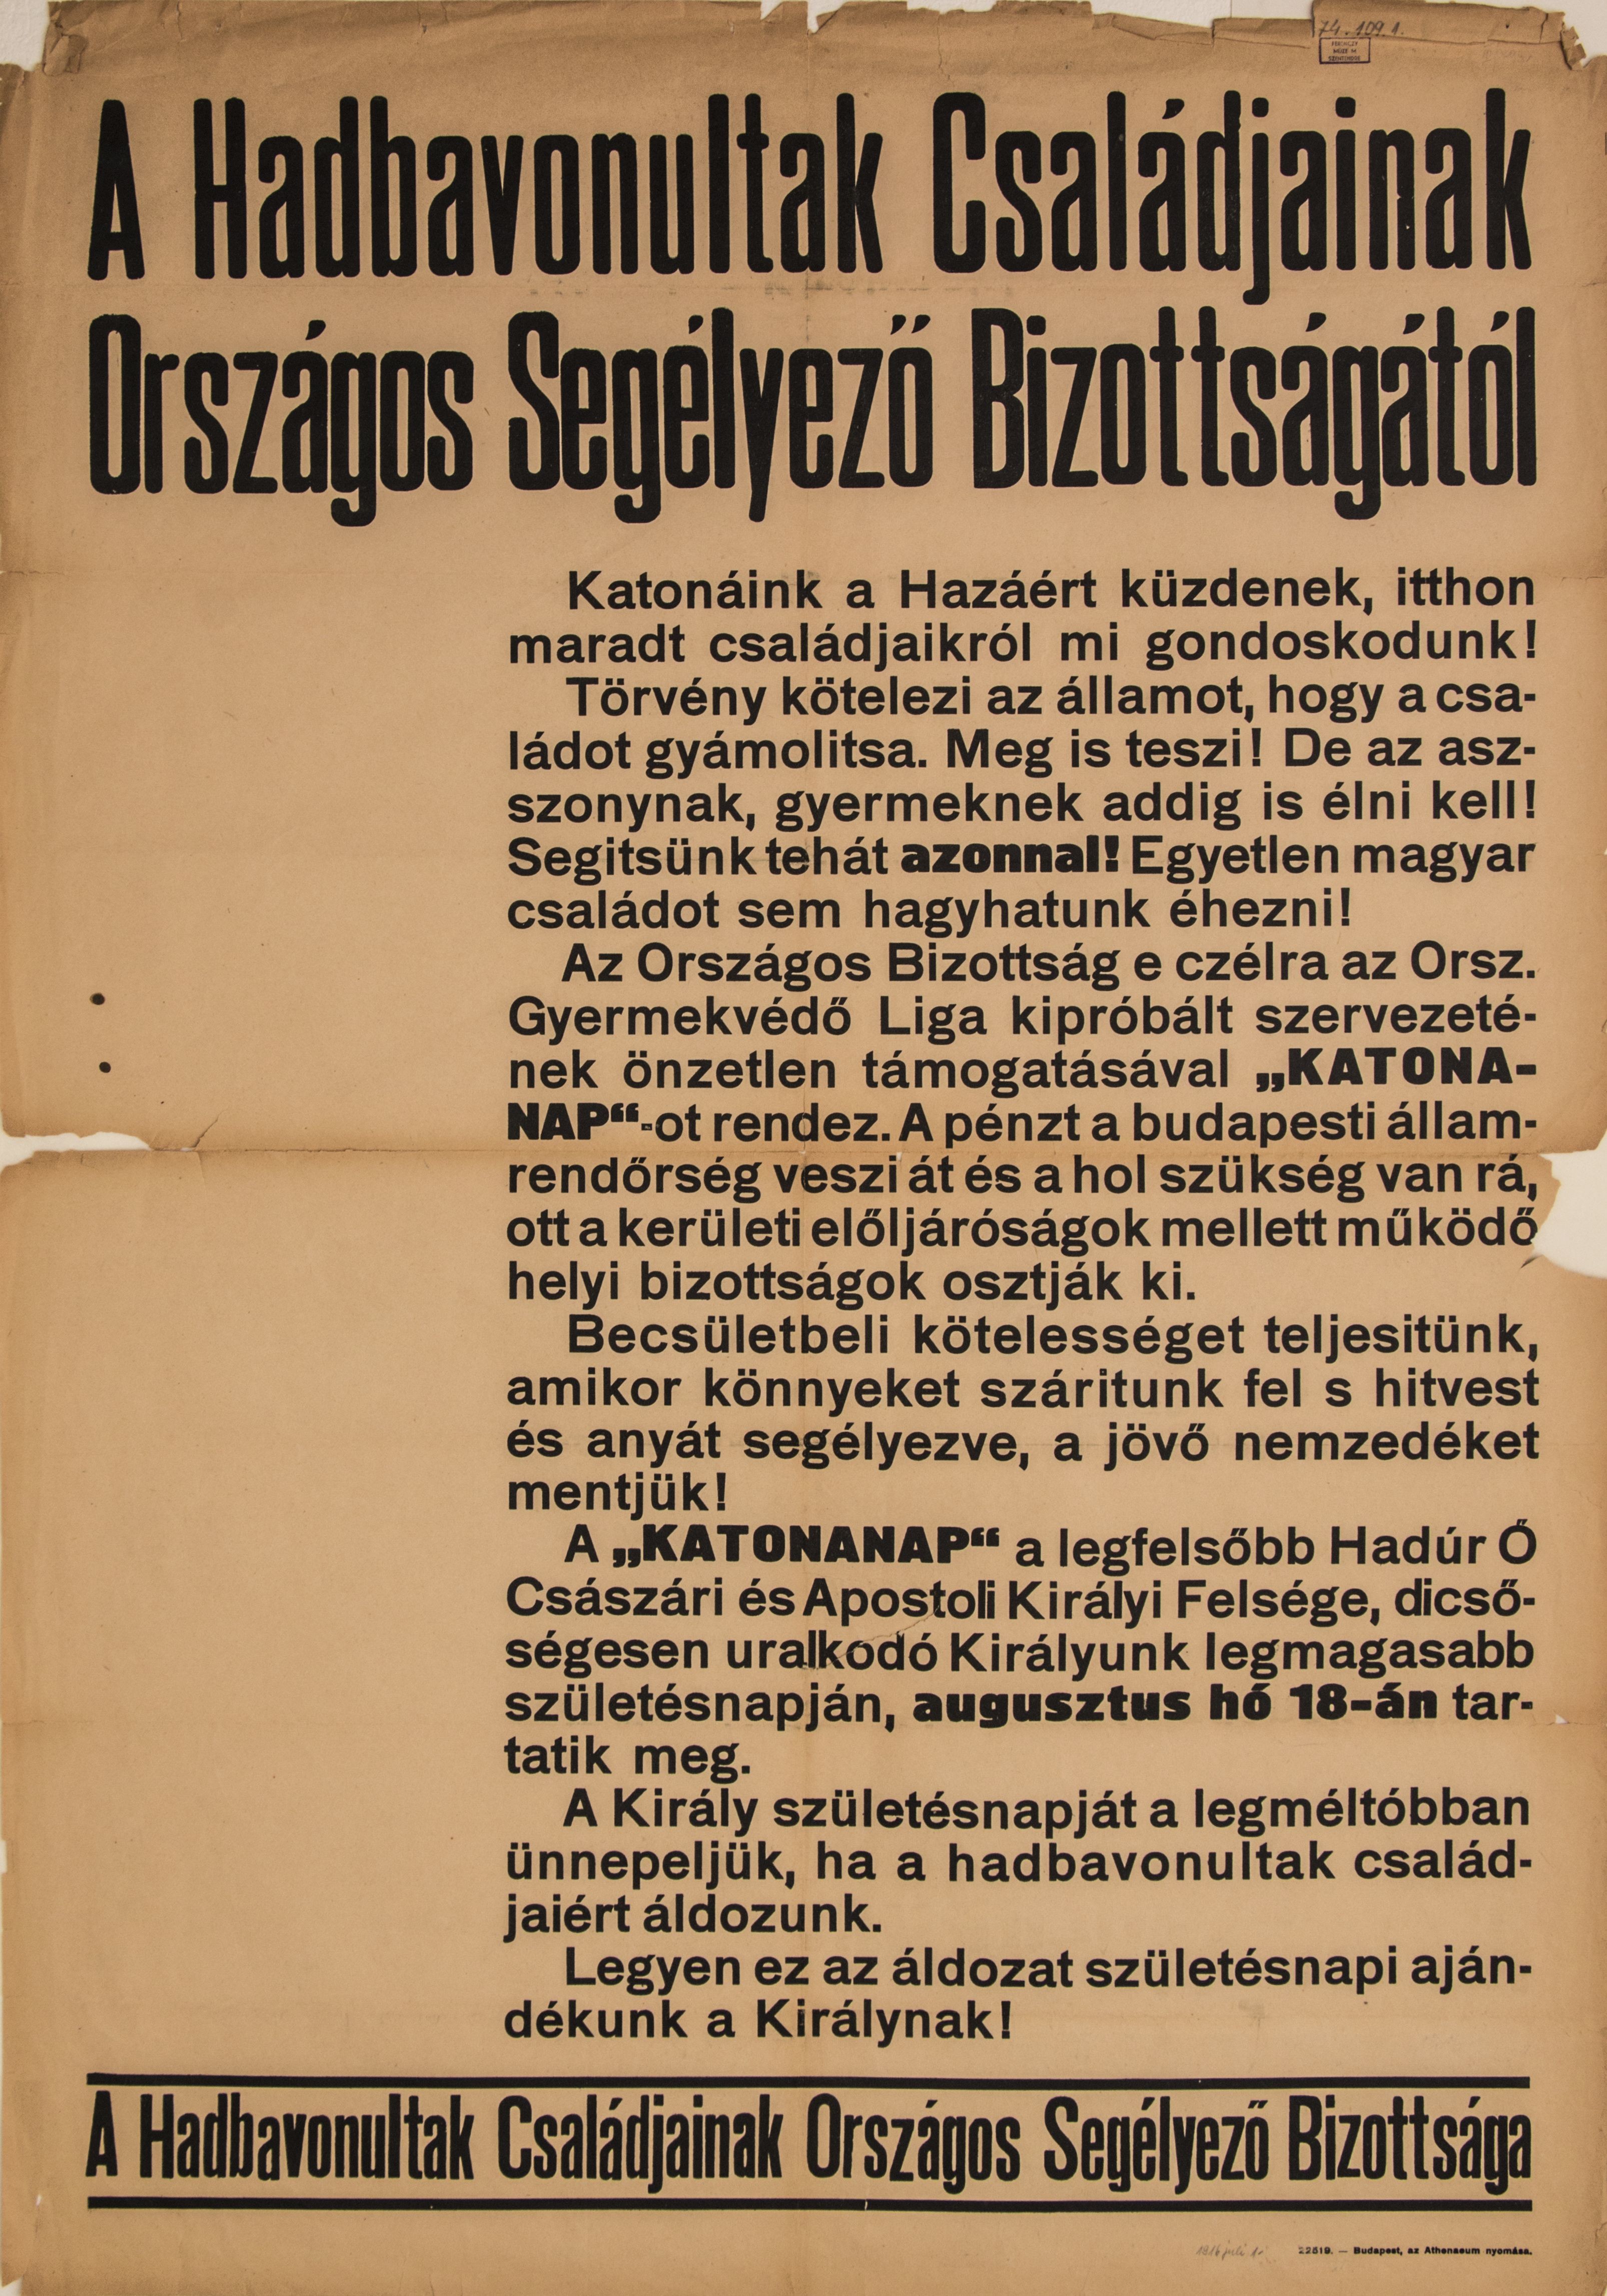 Hadbavonultak családjainak Országos Segélyező Bizottságától (Ferenczy Múzeumi Centrum CC BY-NC-SA)